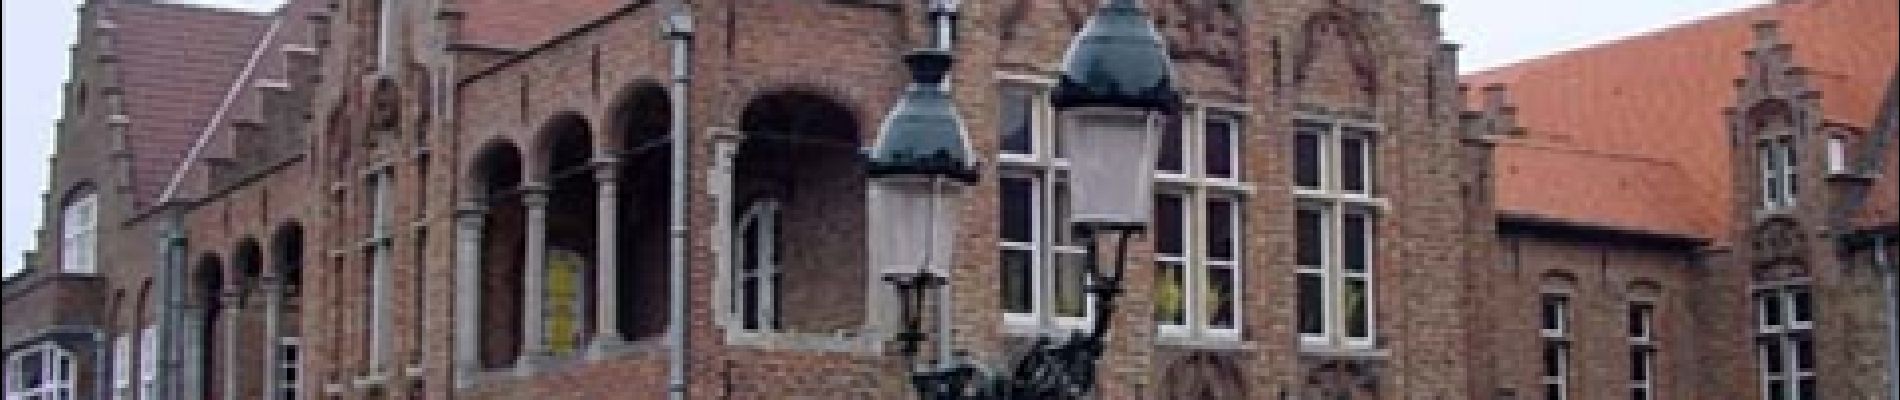 Point d'intérêt Bruges - Hôpital Saint-Jean - Photo